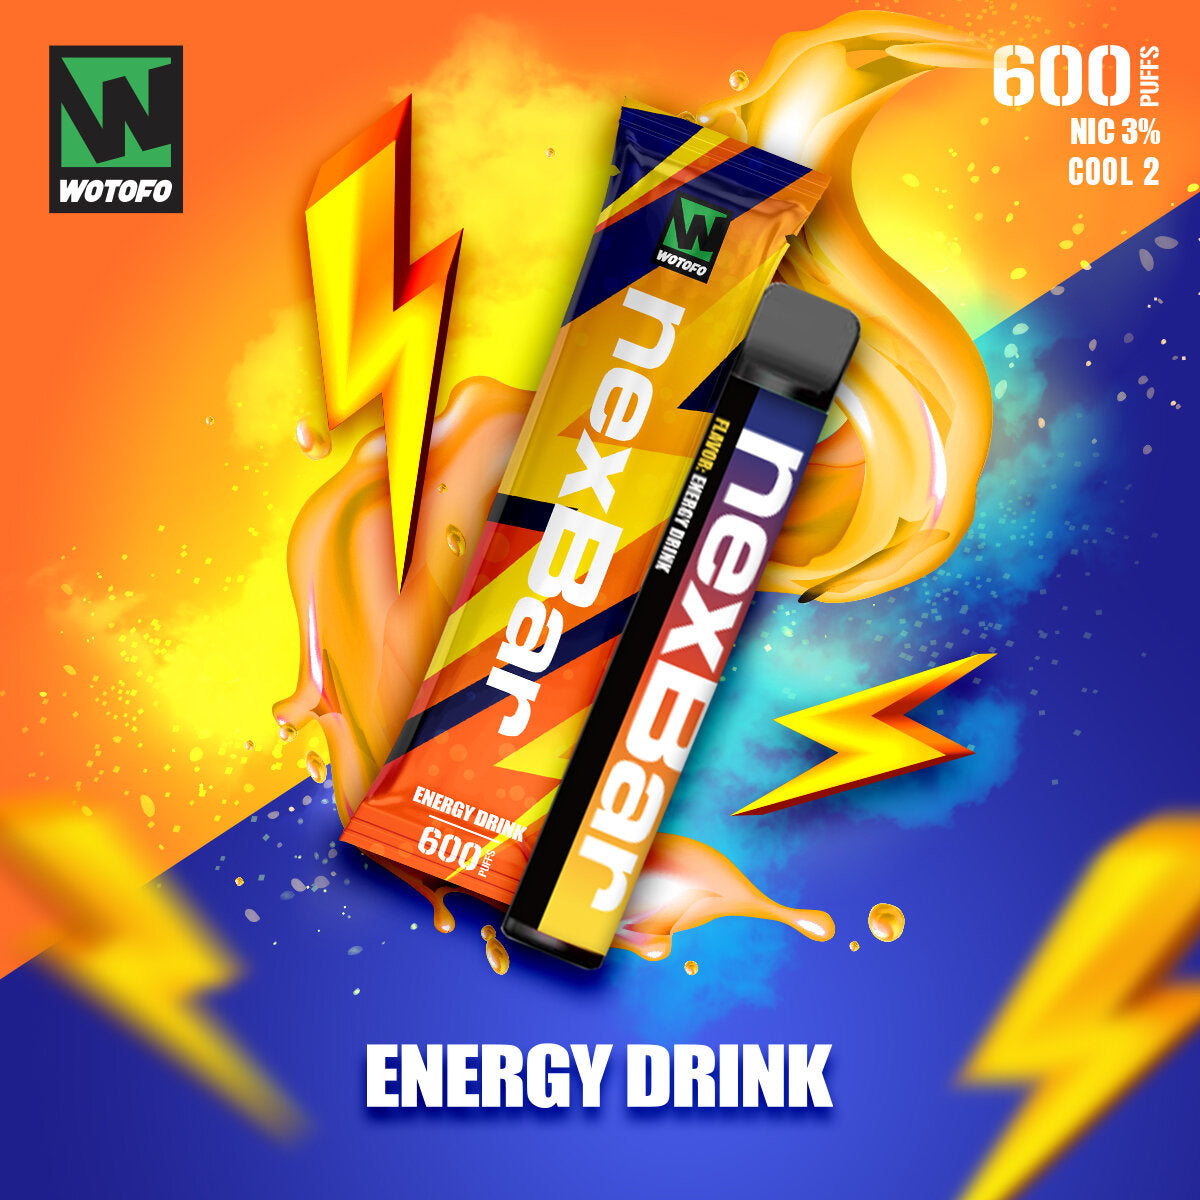 Next Bar - Energy Drink